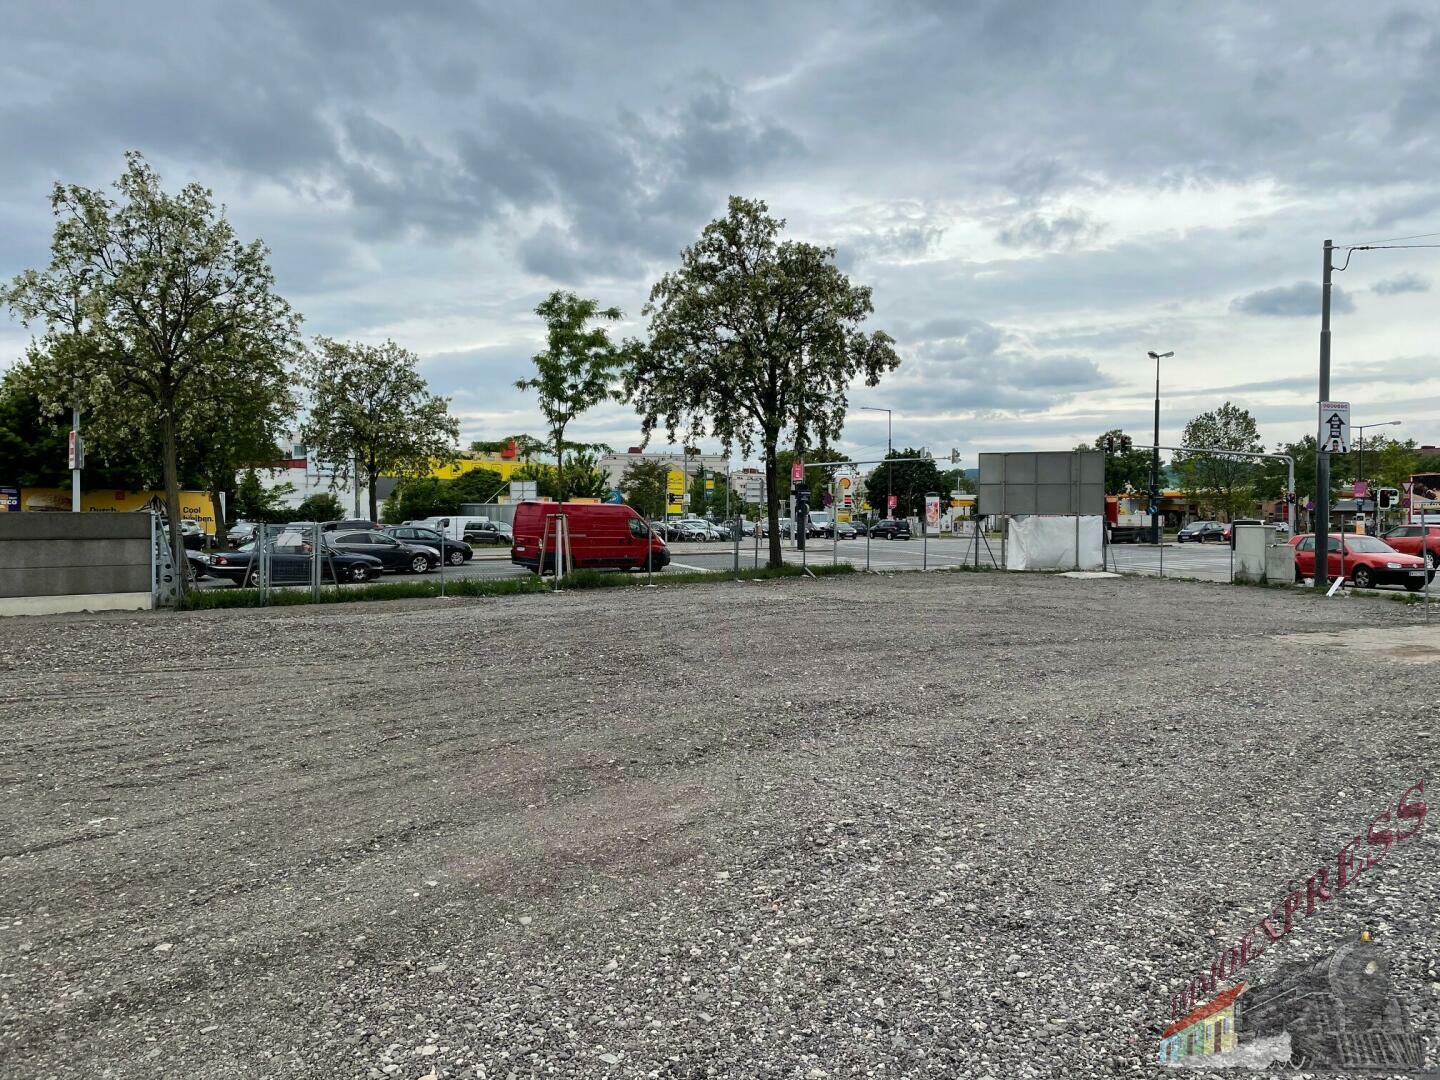 Top Autoplatz 2000 m², Gewerbeobjekt in ausgezeichneter Lage Leopoldauer Straße 48-52, 1210 Wien.